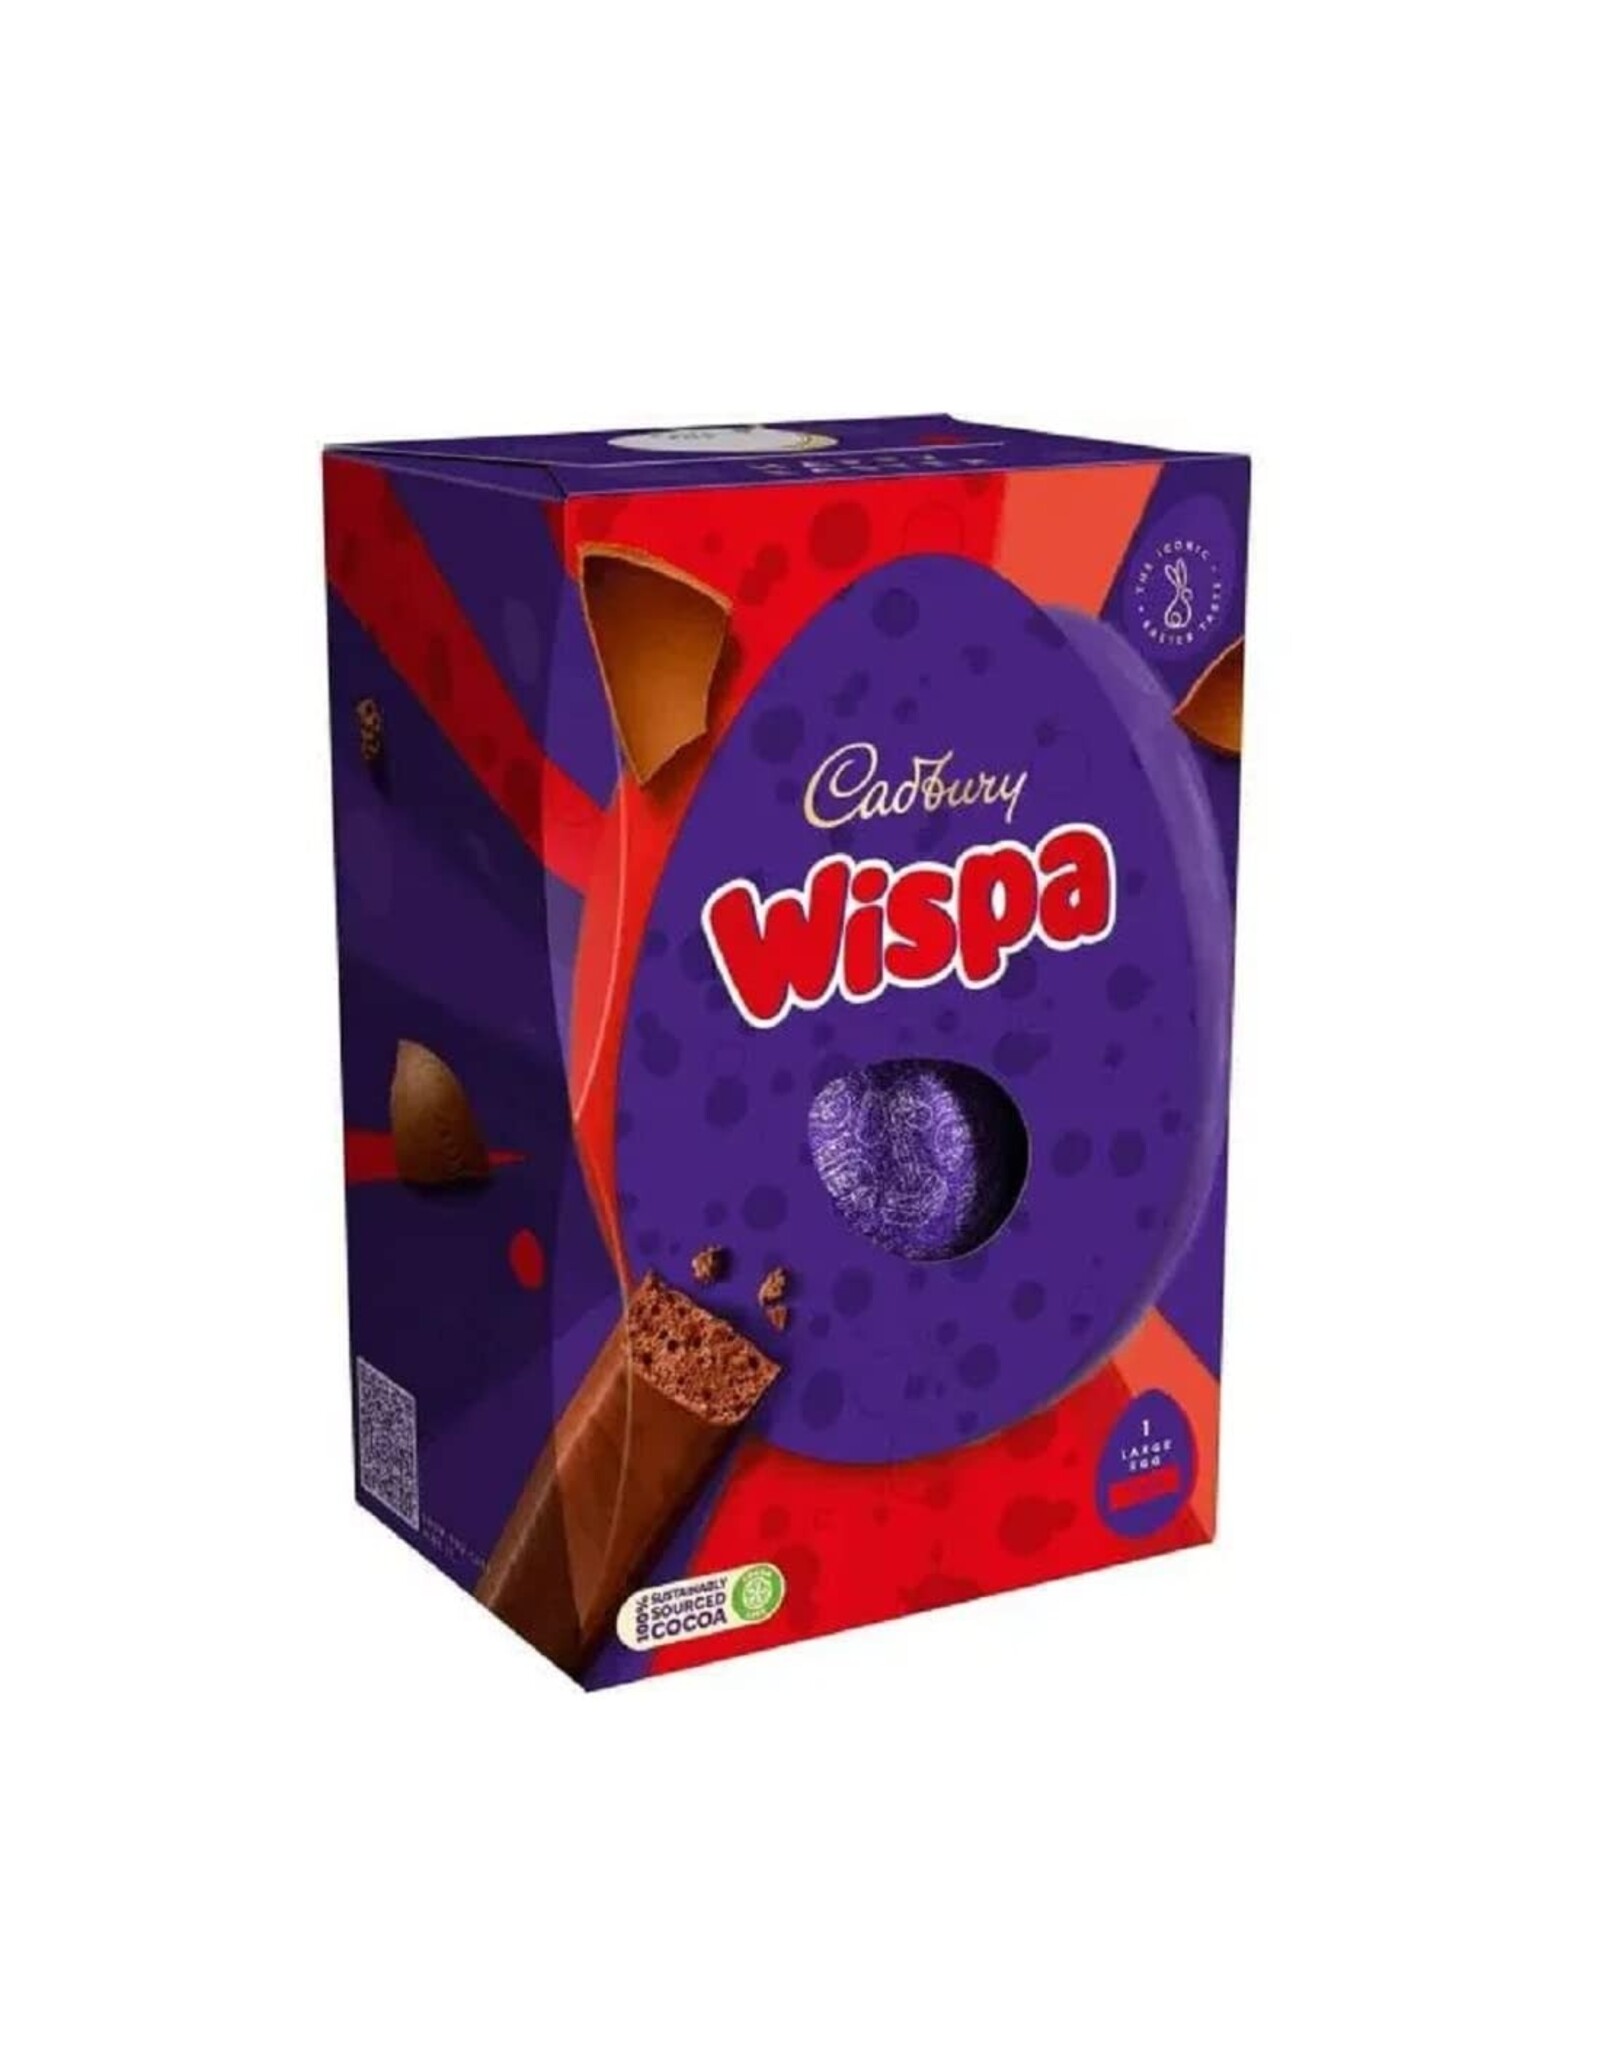 Cadbury Cadbury Wispa Egg (British)